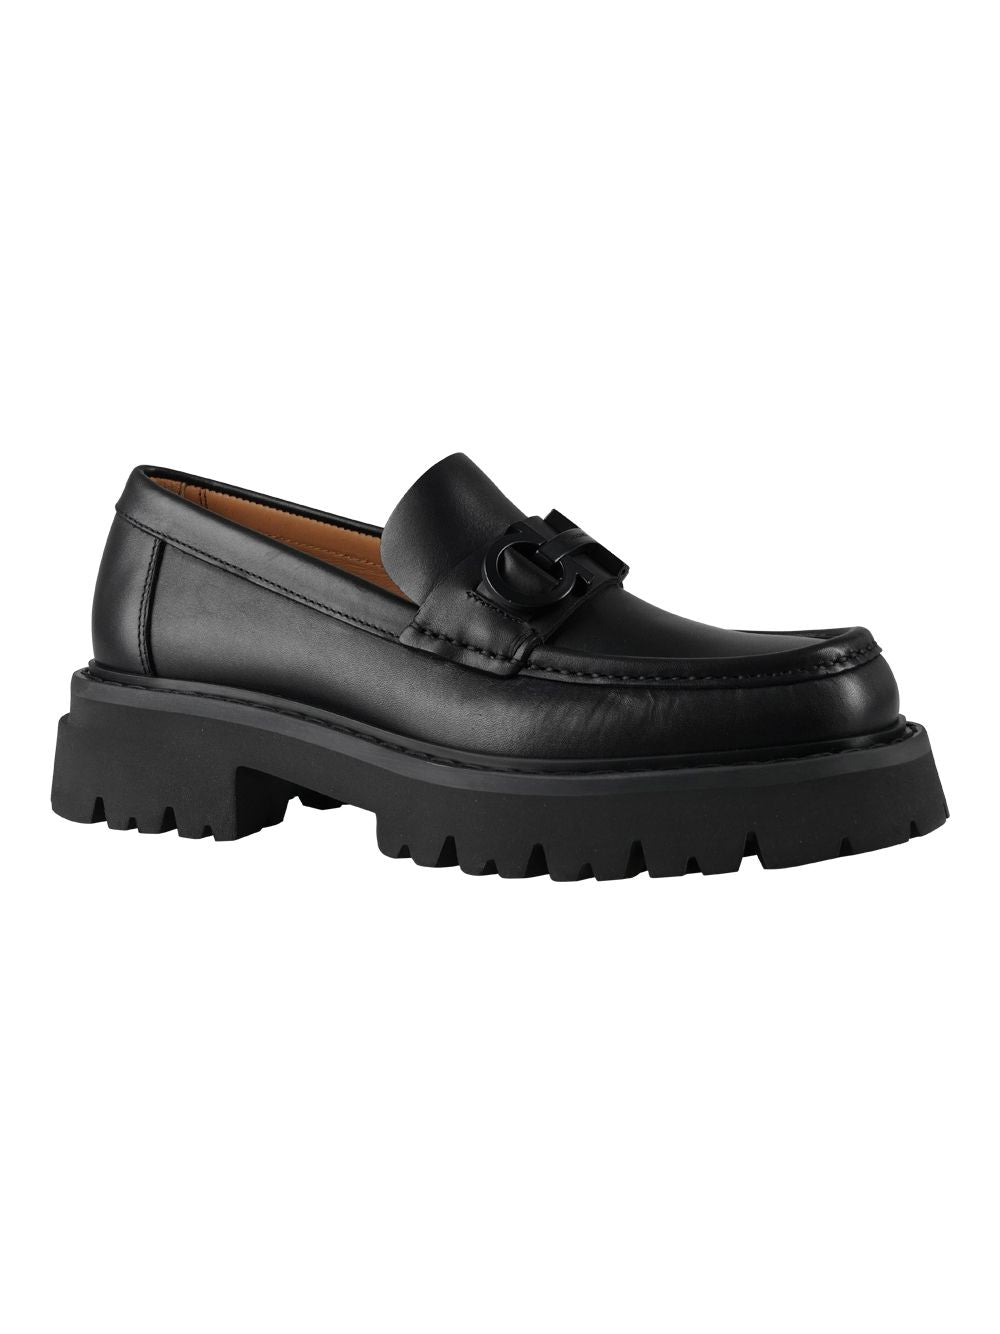 أحذية موكاسين جلدية للرجال من فيراغامو FW23 - أسود